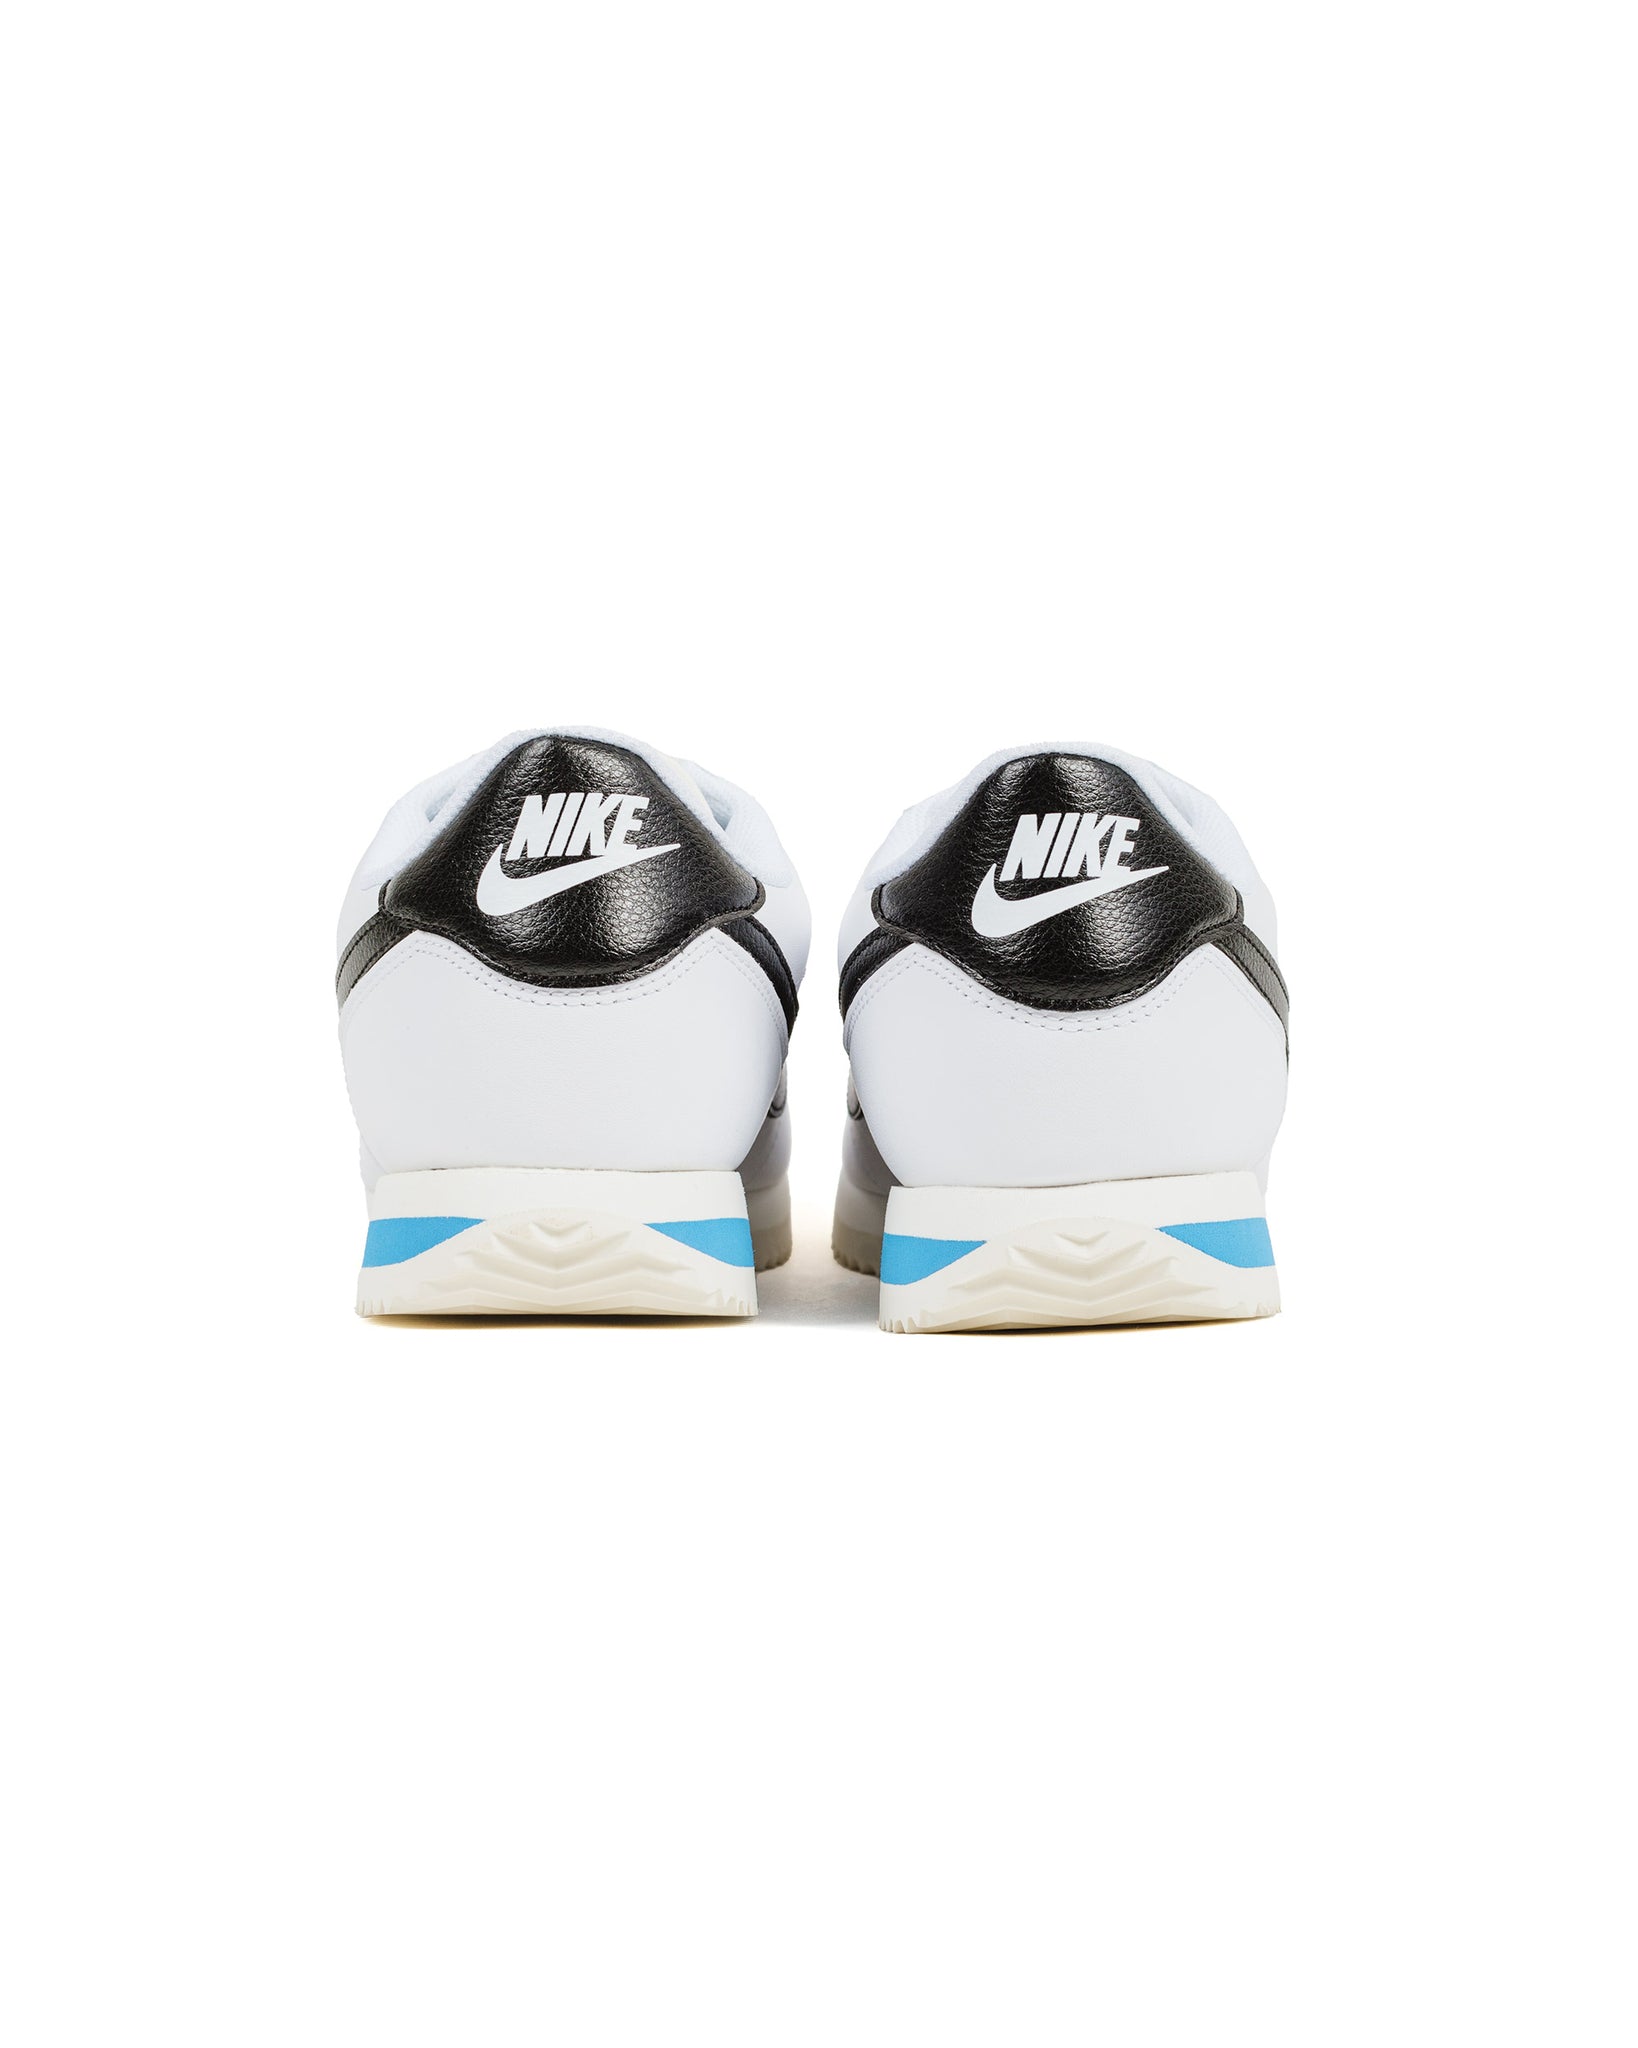 Nike Cortez White/Black Rear 